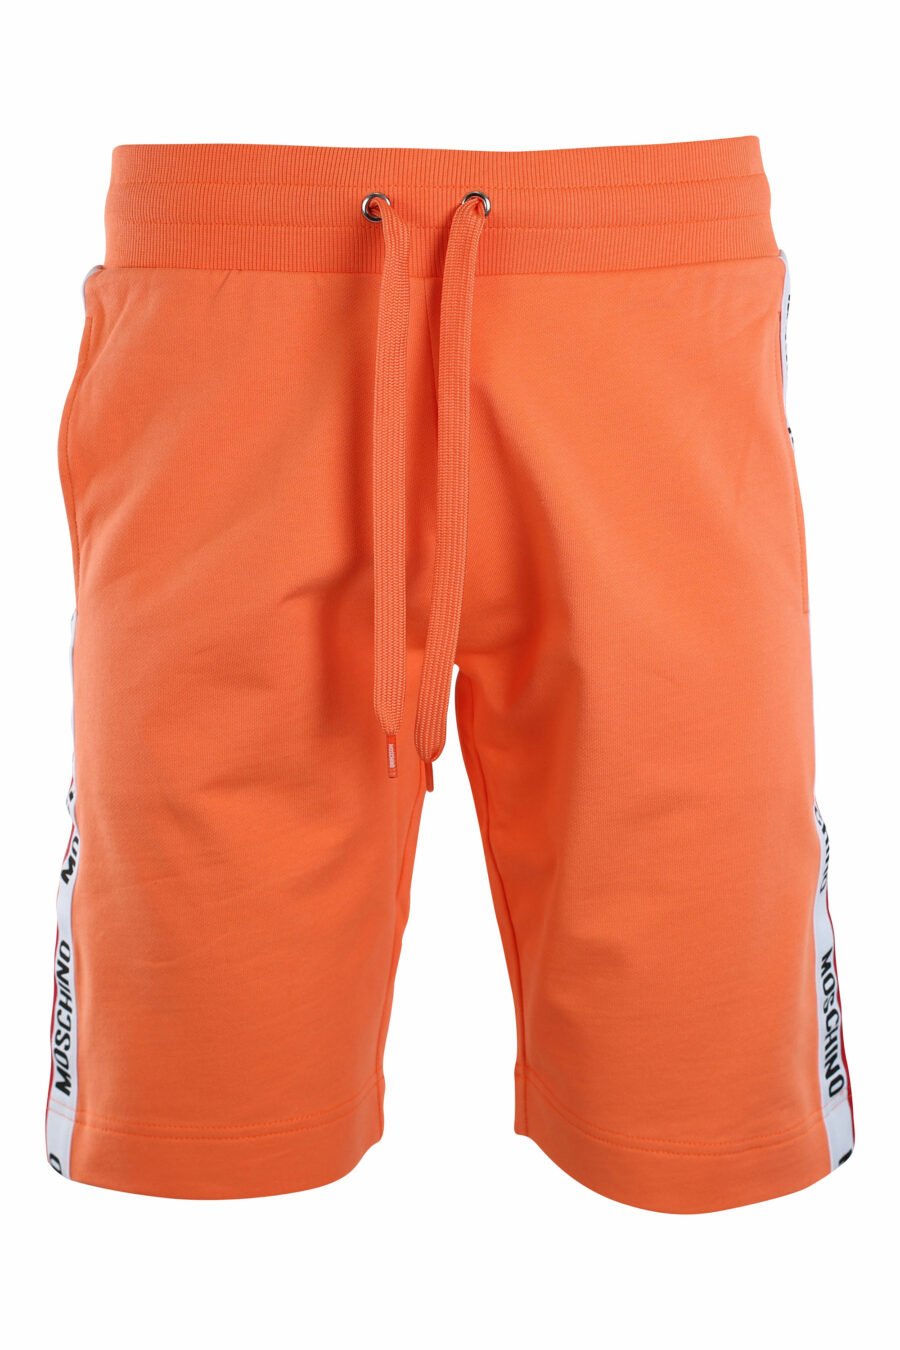 Pantalón de chándal corto naranja con logo en banda laterales - IMG 2209